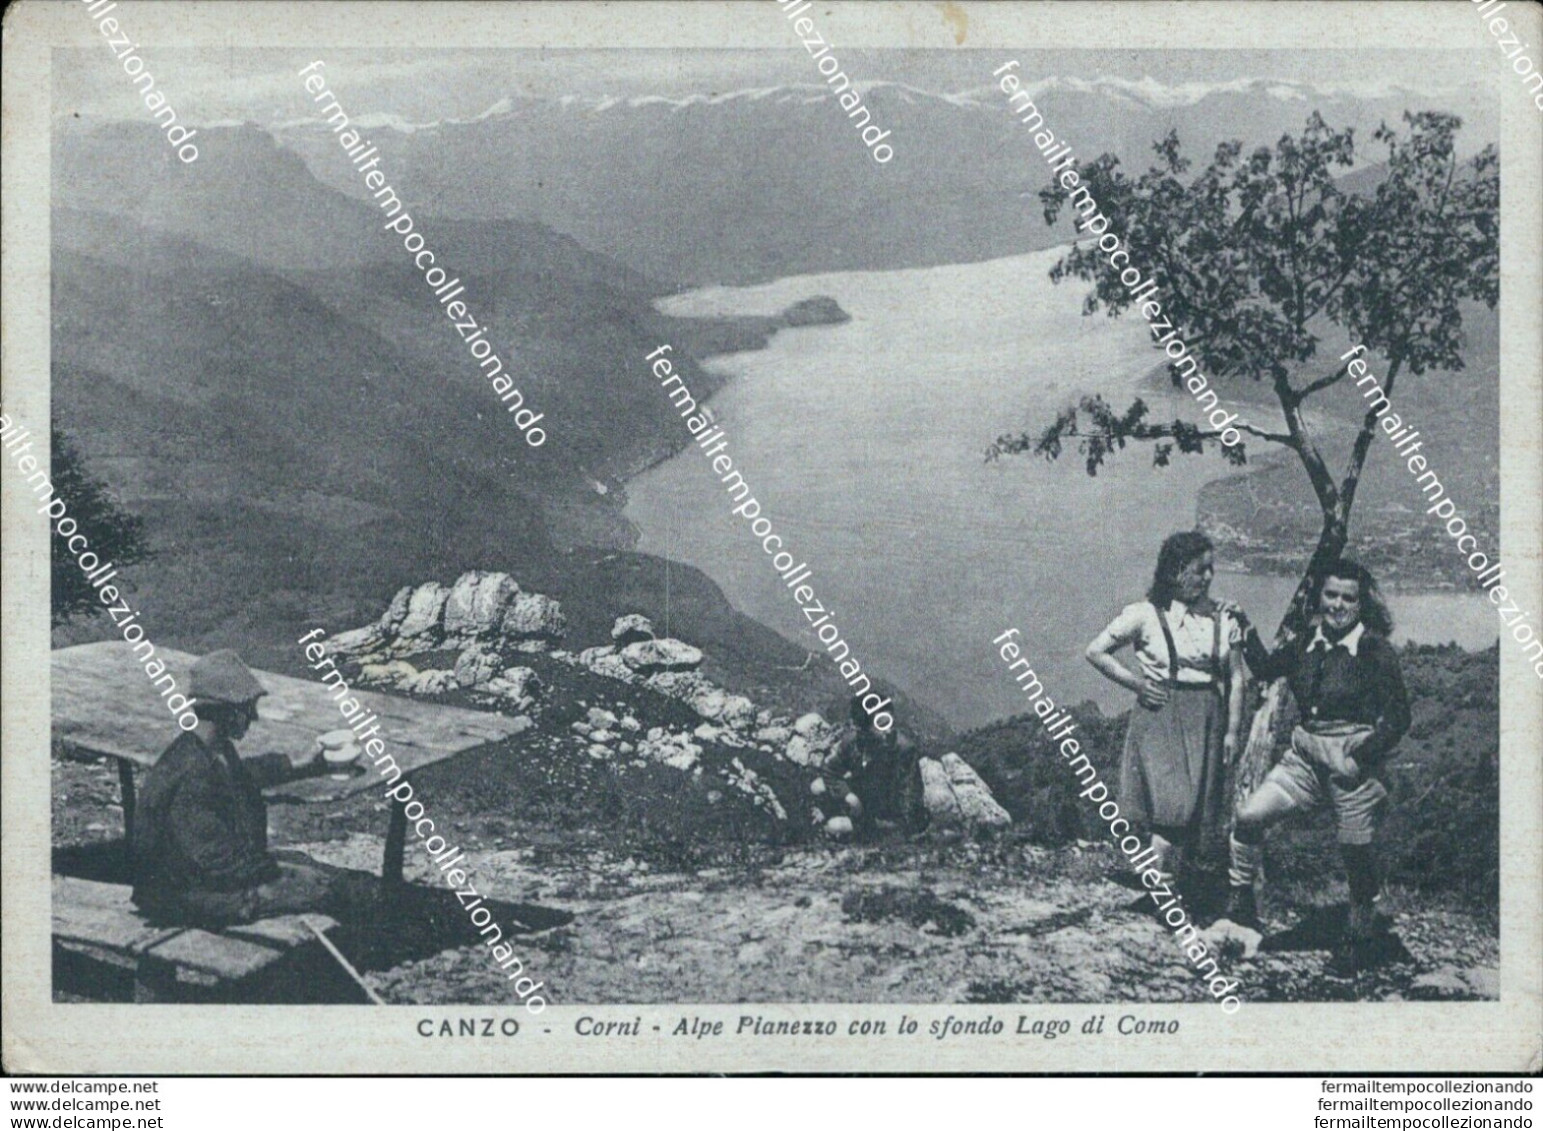 Bs448 Cartolina Canzo Corni Alpe Pianezzo 1943 Provincia Di Como Lombardia - Como